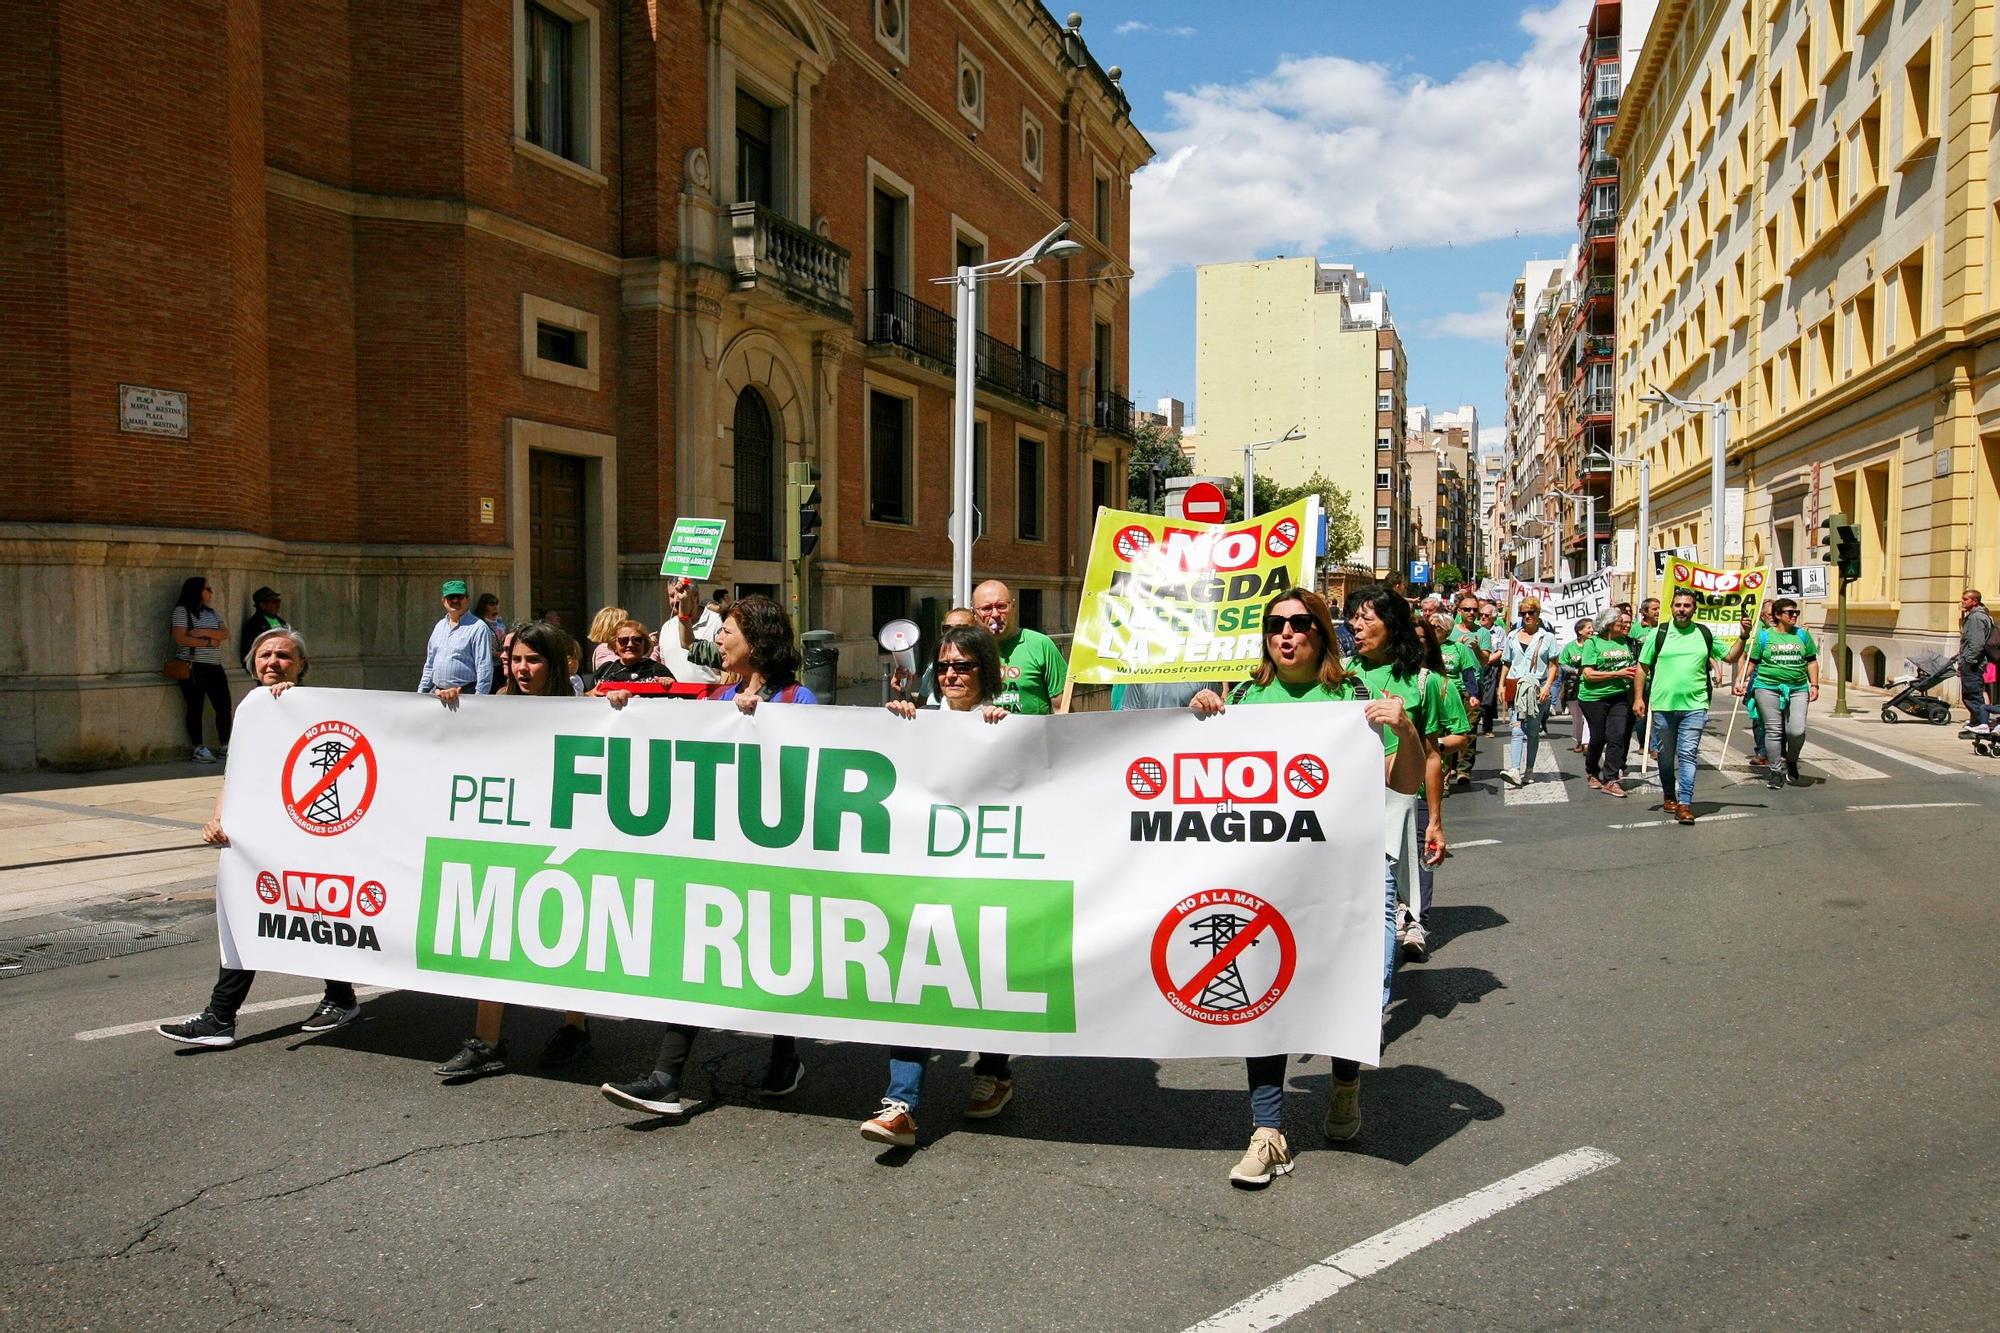 Una marea verde de 52 tractores y 700 personas grita en Castelló no a las macroplantas solares